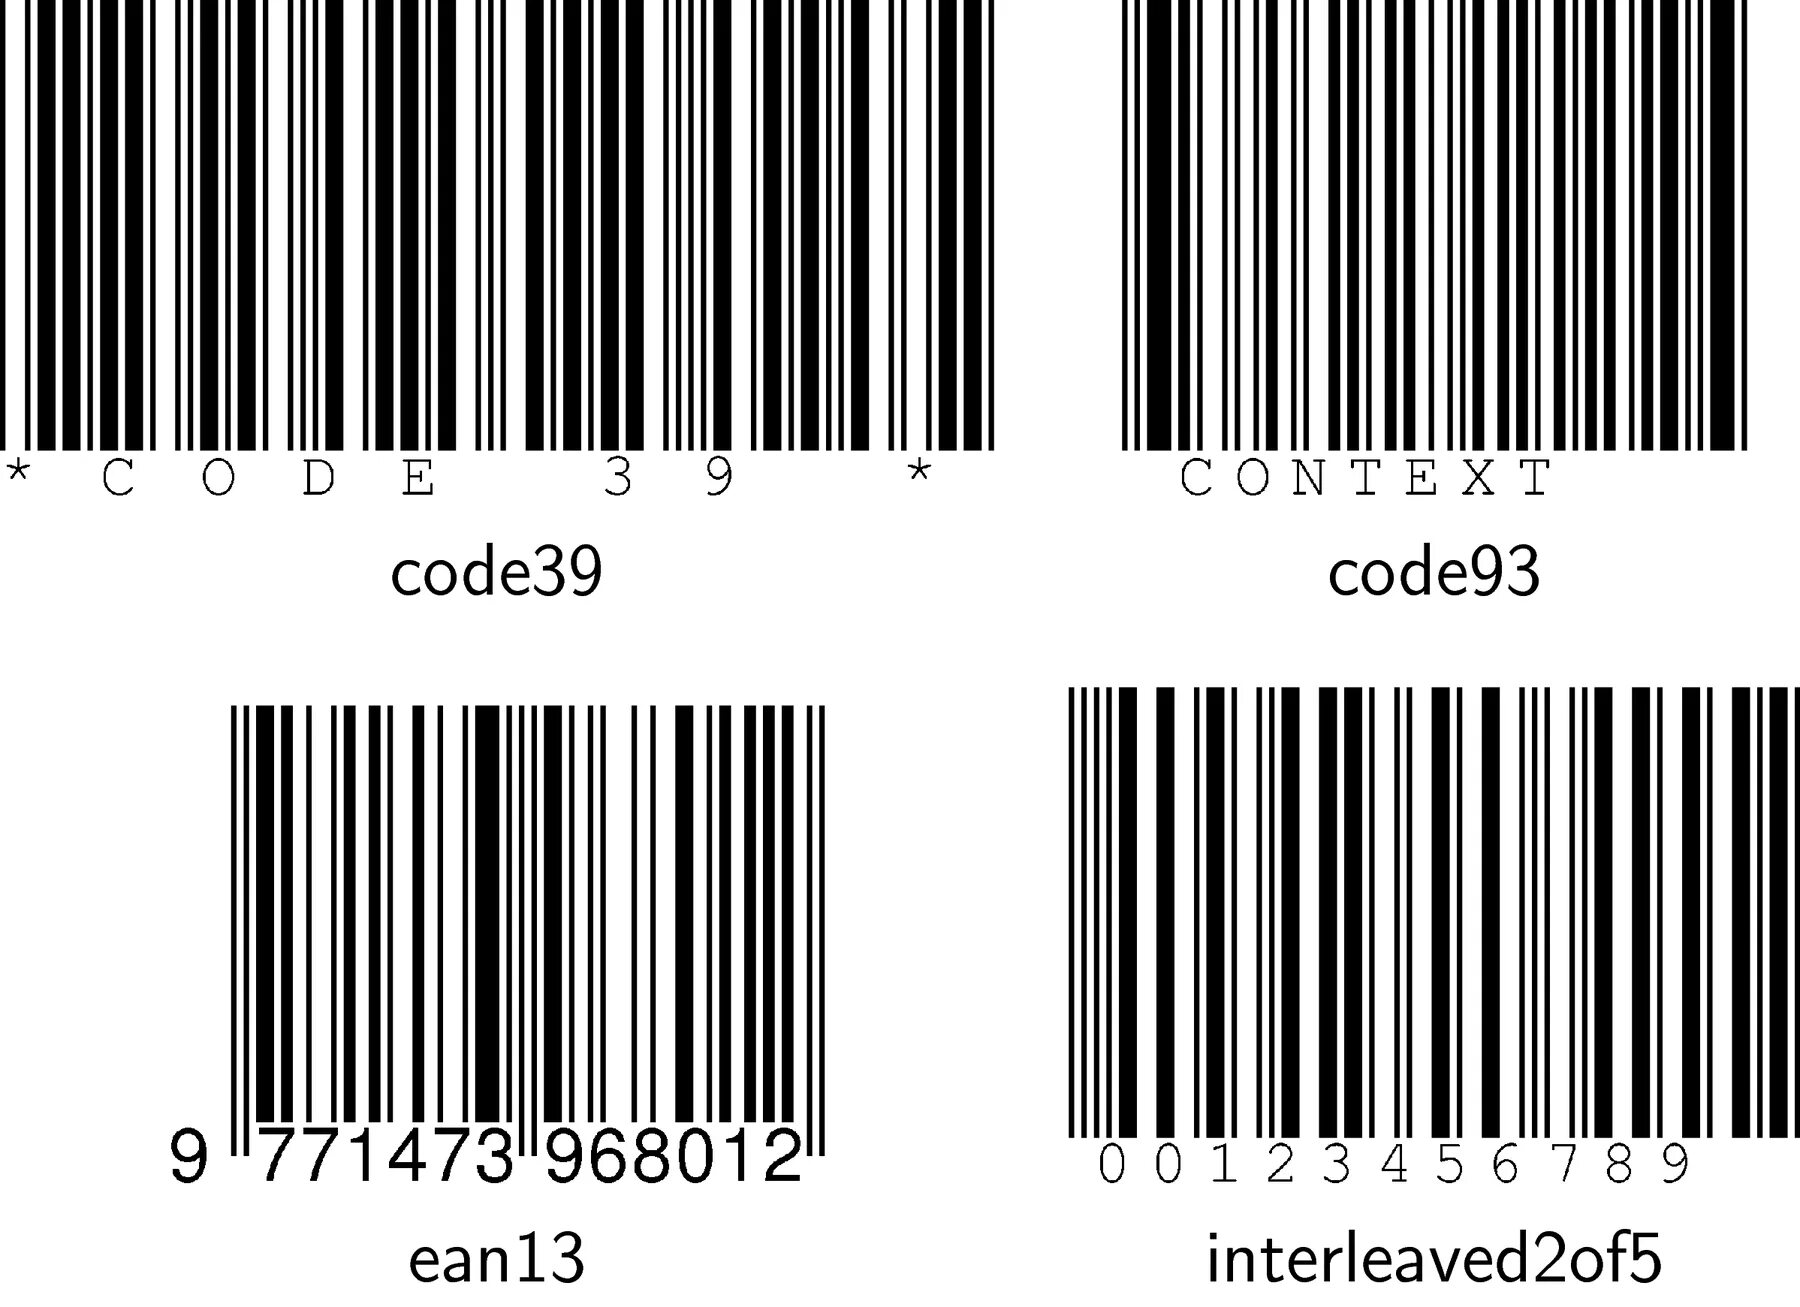 Штрих код ean13+5. ЕАН 13 +5. Линейный штрих кодов EAN-13 на упаковке. Code39 и ean13 разница.